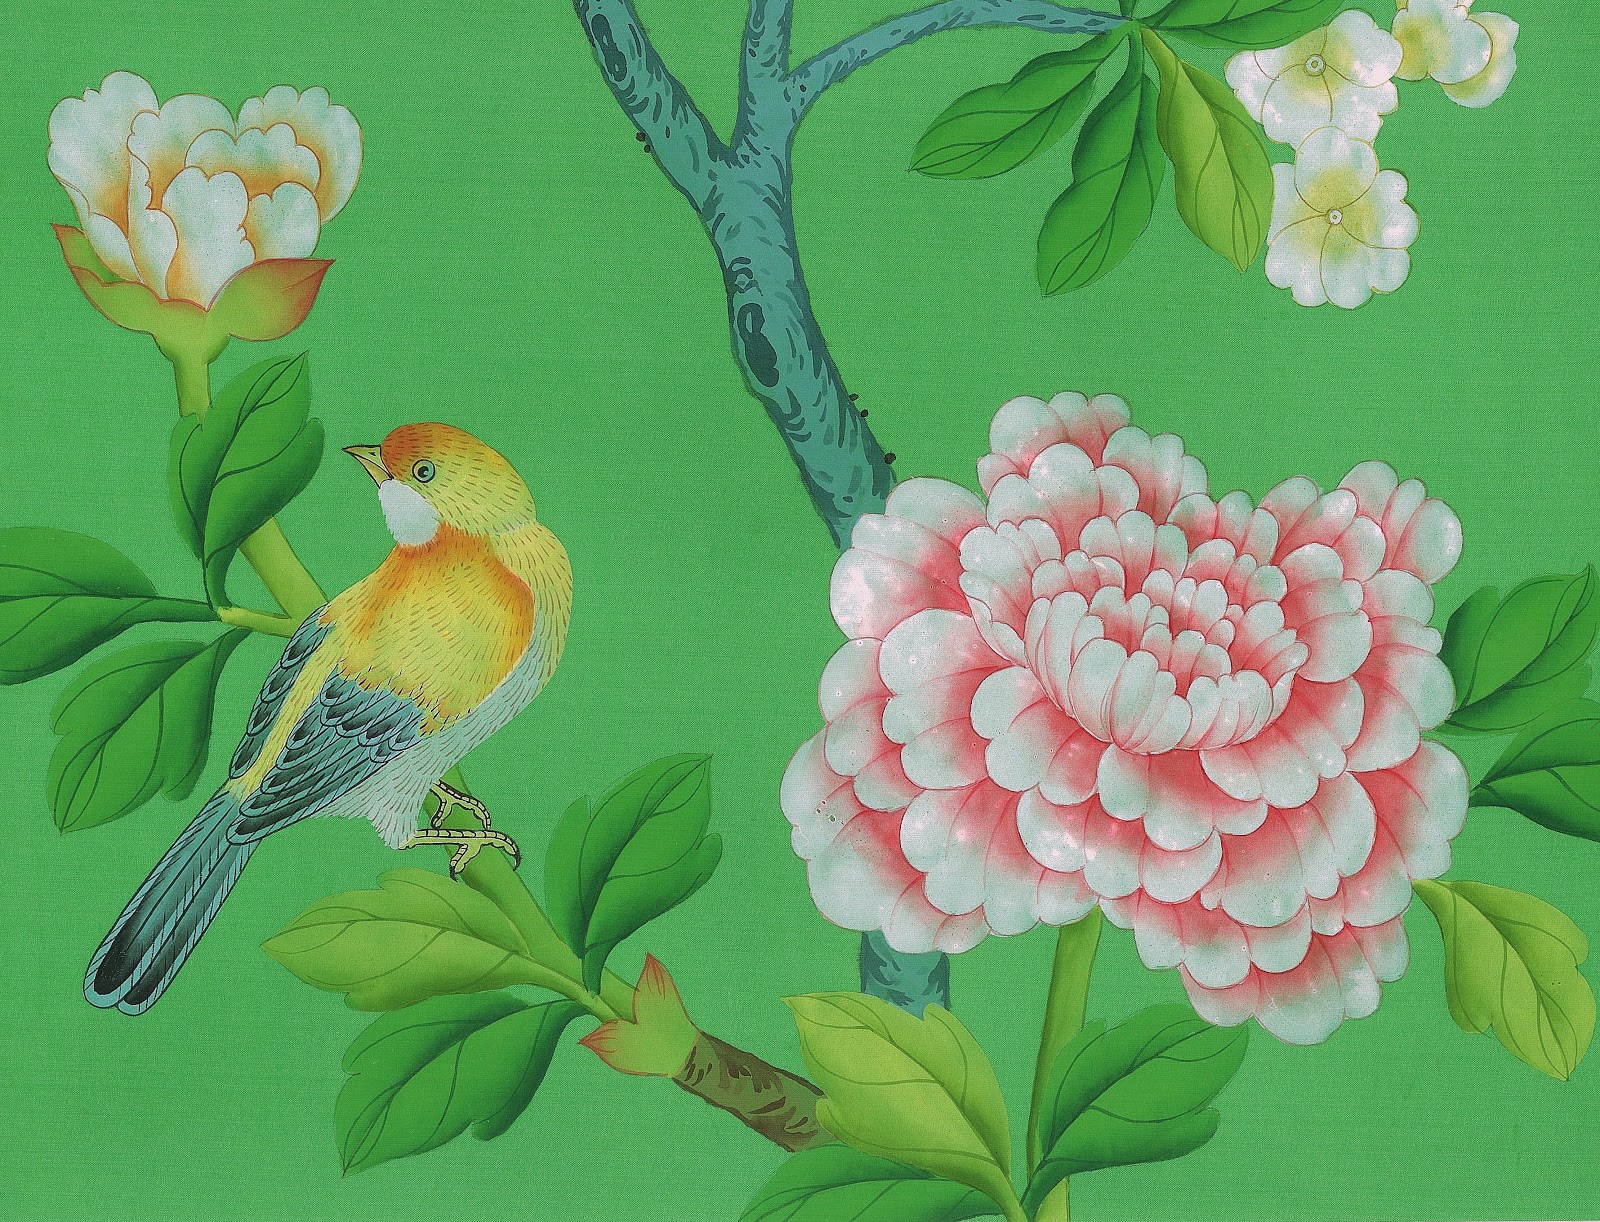 http://2.bp.blogspot.com/-VGiAEkfB500/UKGoXnomm_I/AAAAAAAA20g/oUnkwD6--GA/s1600/2.+Griffin+and+Wong+chinese+hand+painted+silk+wallpaper+2.jpg